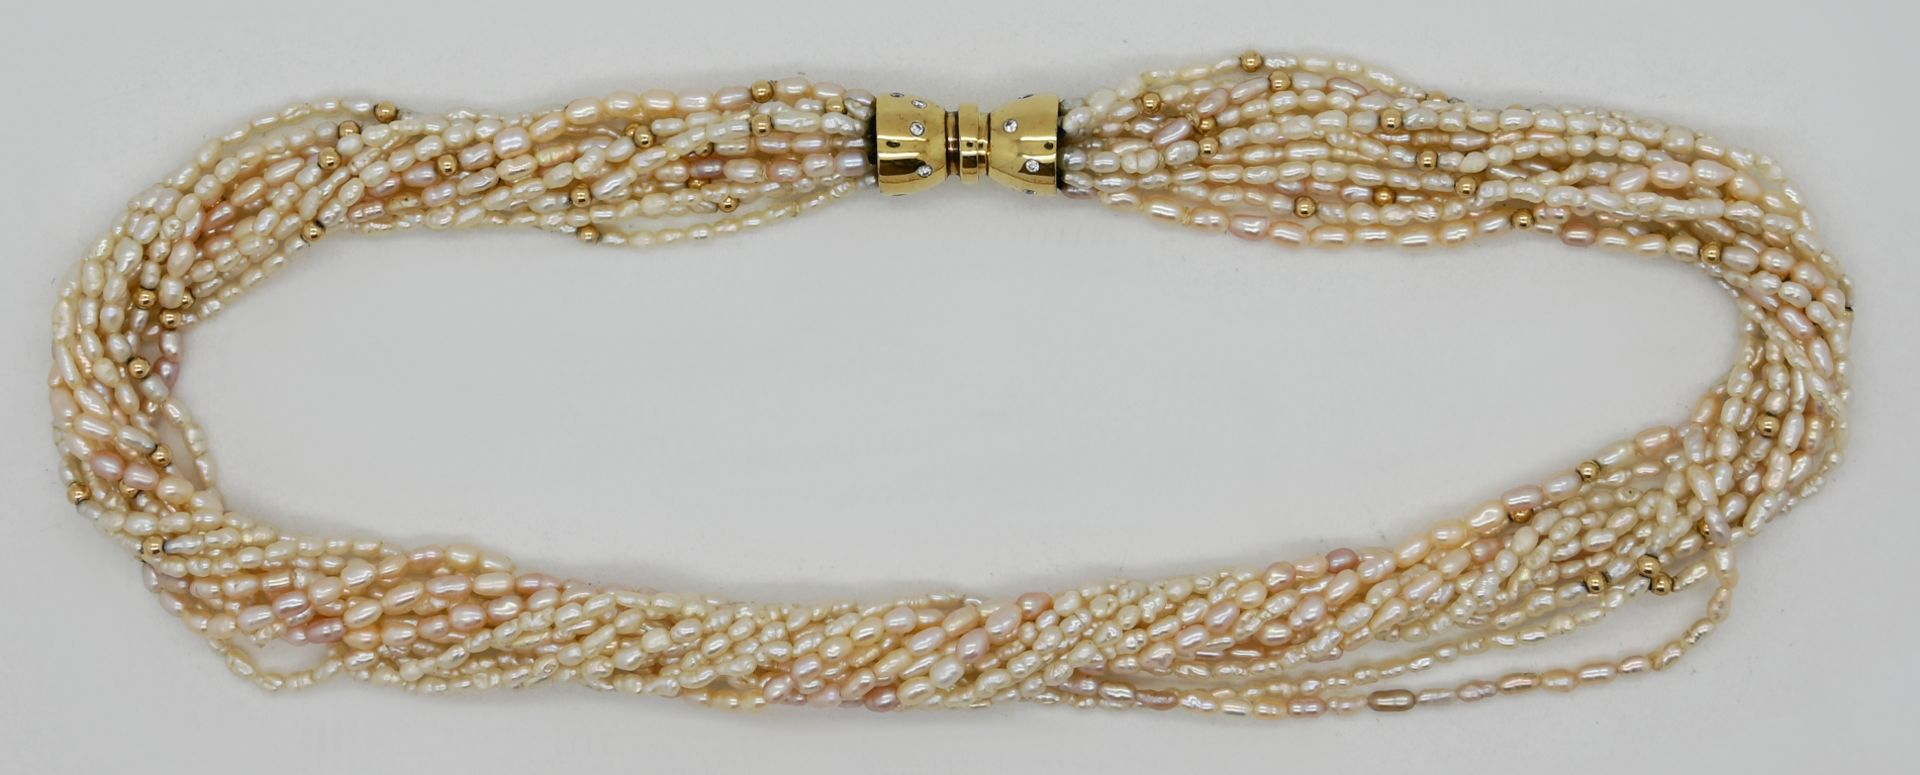 1 12-reihige Perlenkette mit Zwischenteilen und Schließe in GG 14ct. mit Brillanten, Tsp.